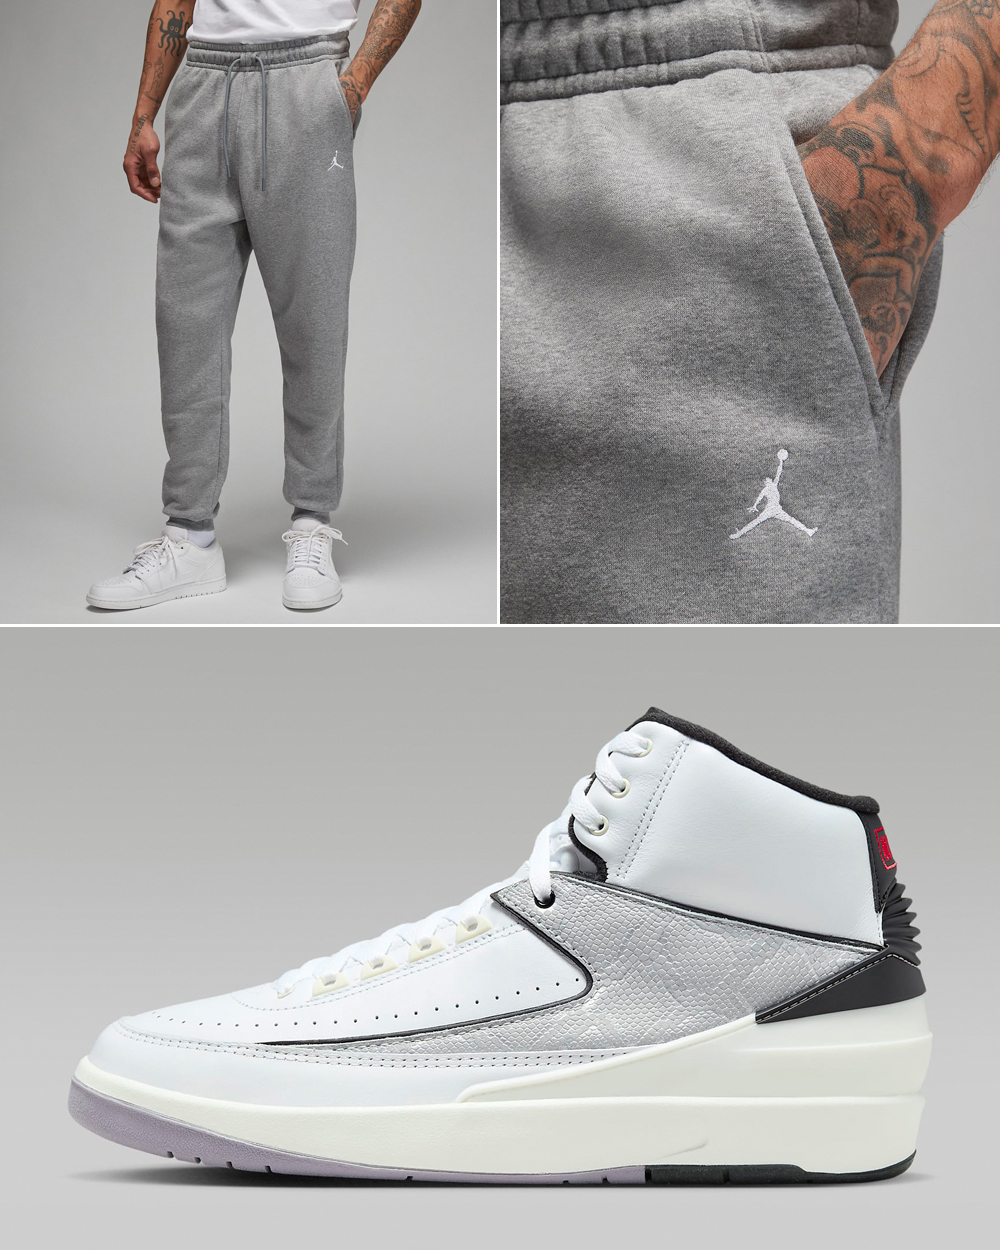 Air-Jordan-2-Python-Pants-Matching-Outfit